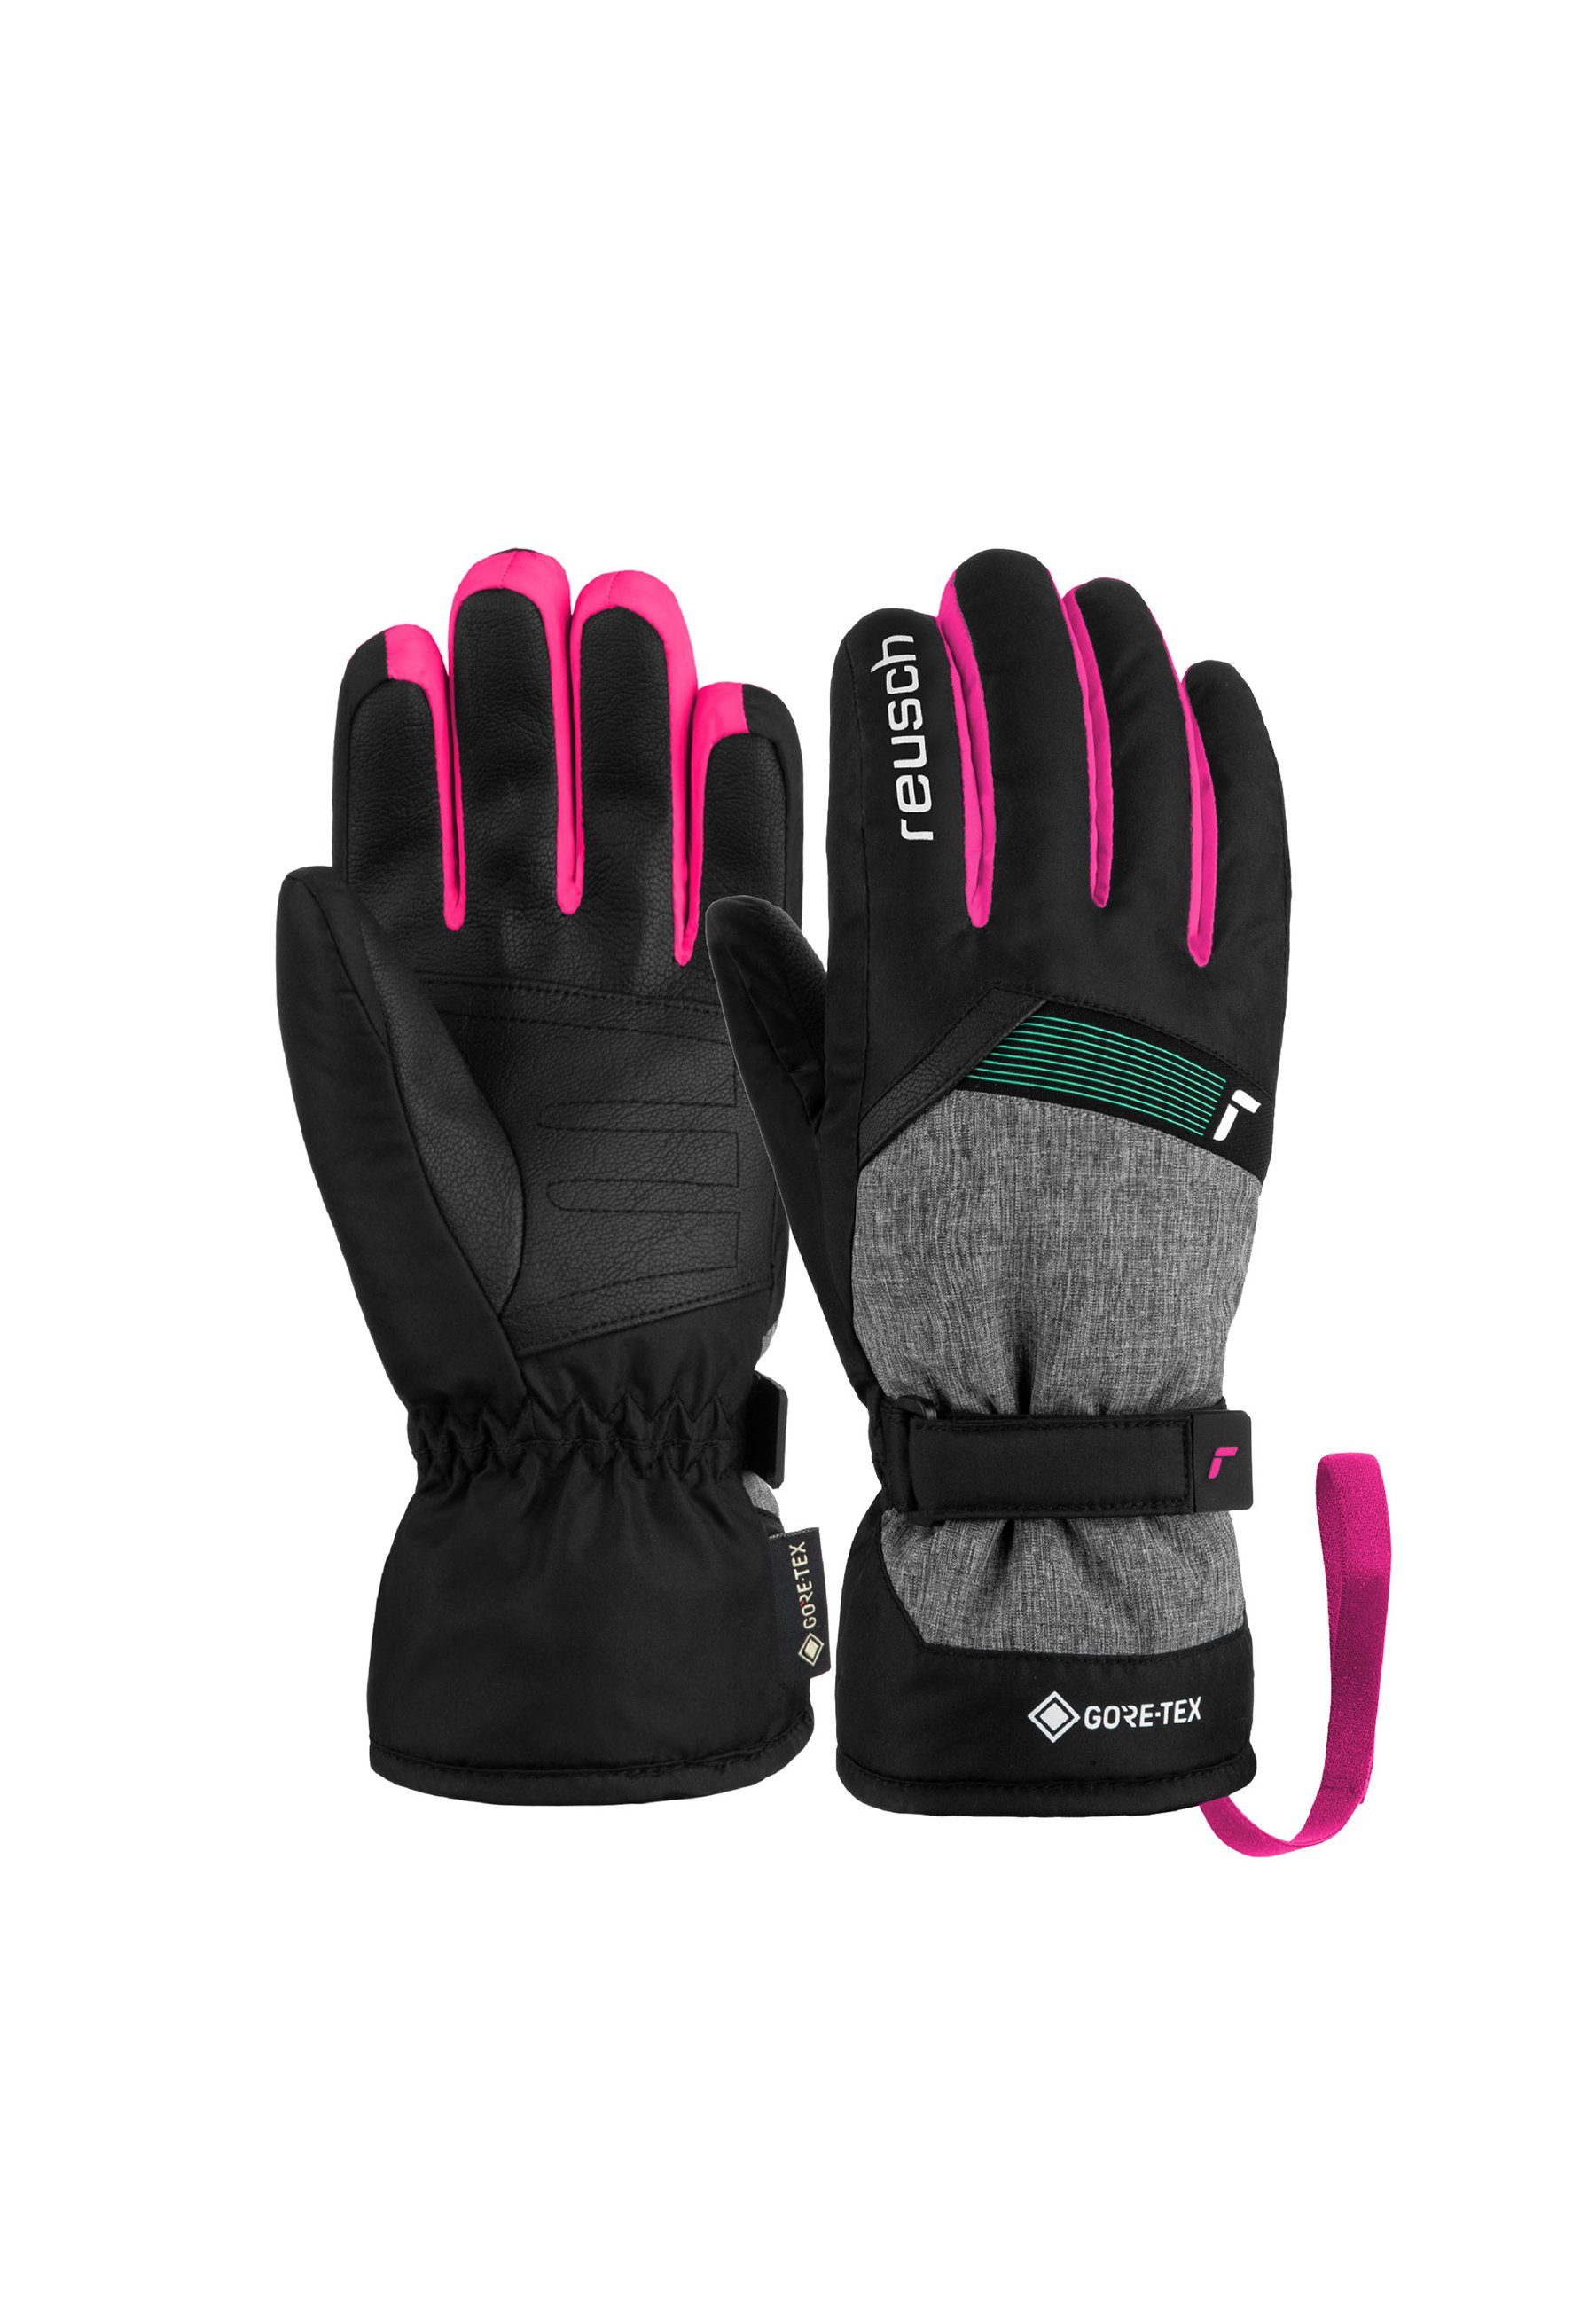 Rosa Ski Handschuhe kaufen » Pinke Ski Handschuhe | OTTO